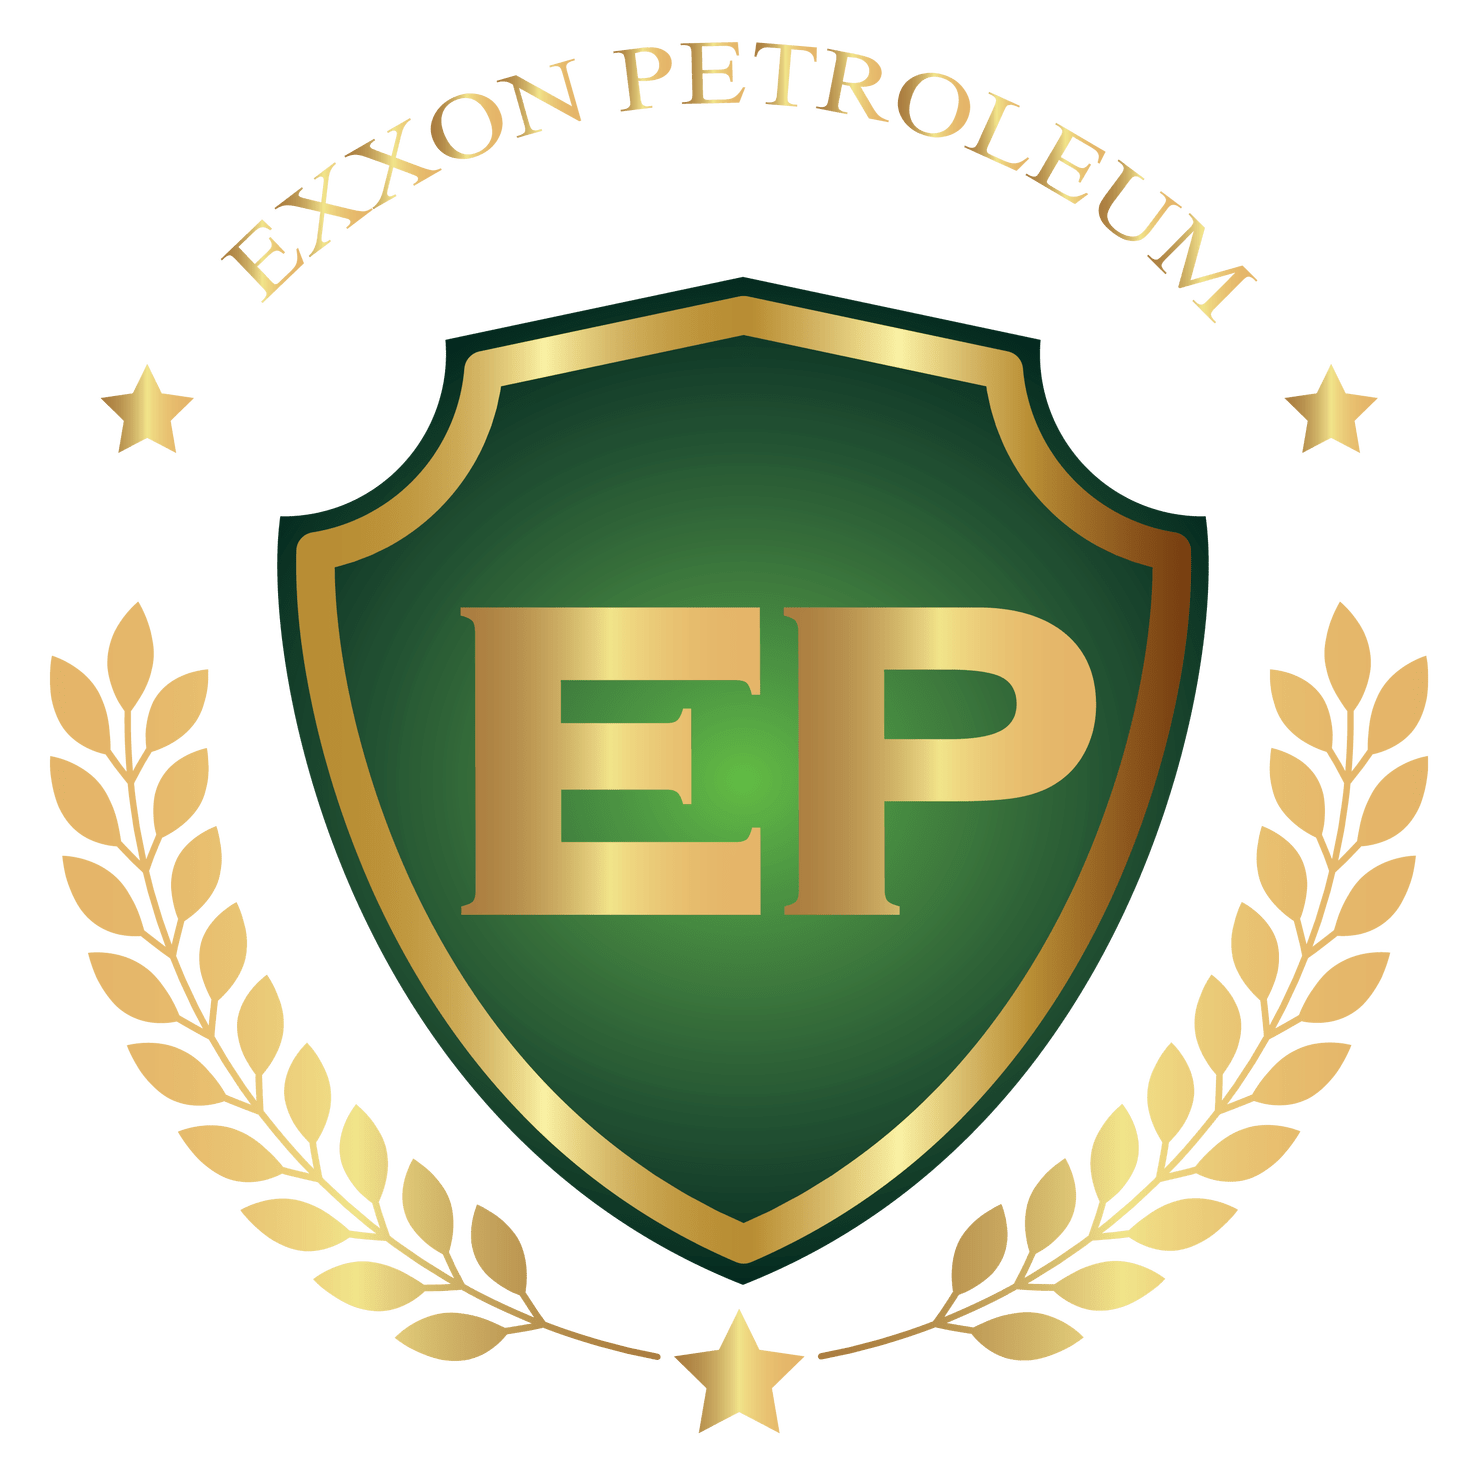 Exxon petroleum part